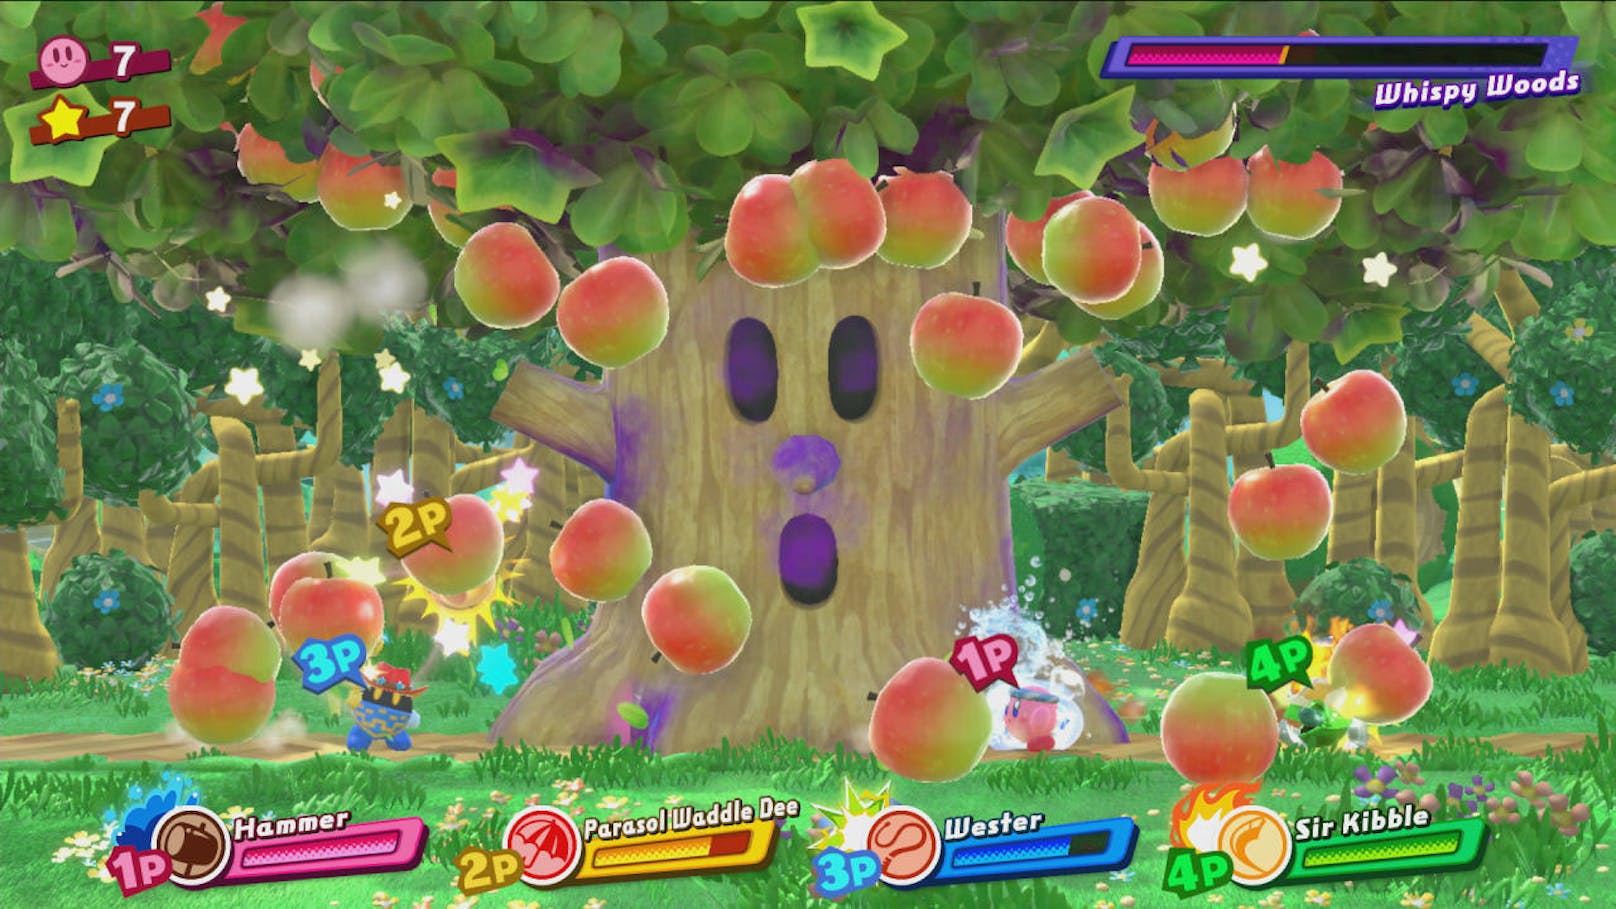 Ebenfalls dabei sind die klassischen Kirby-Bosse, die mit den richtigen Elementen diesmal sogar schneller besiegt werden können. Der Baum Whispy Woods und Flammen vertragen sich eben nicht gut.